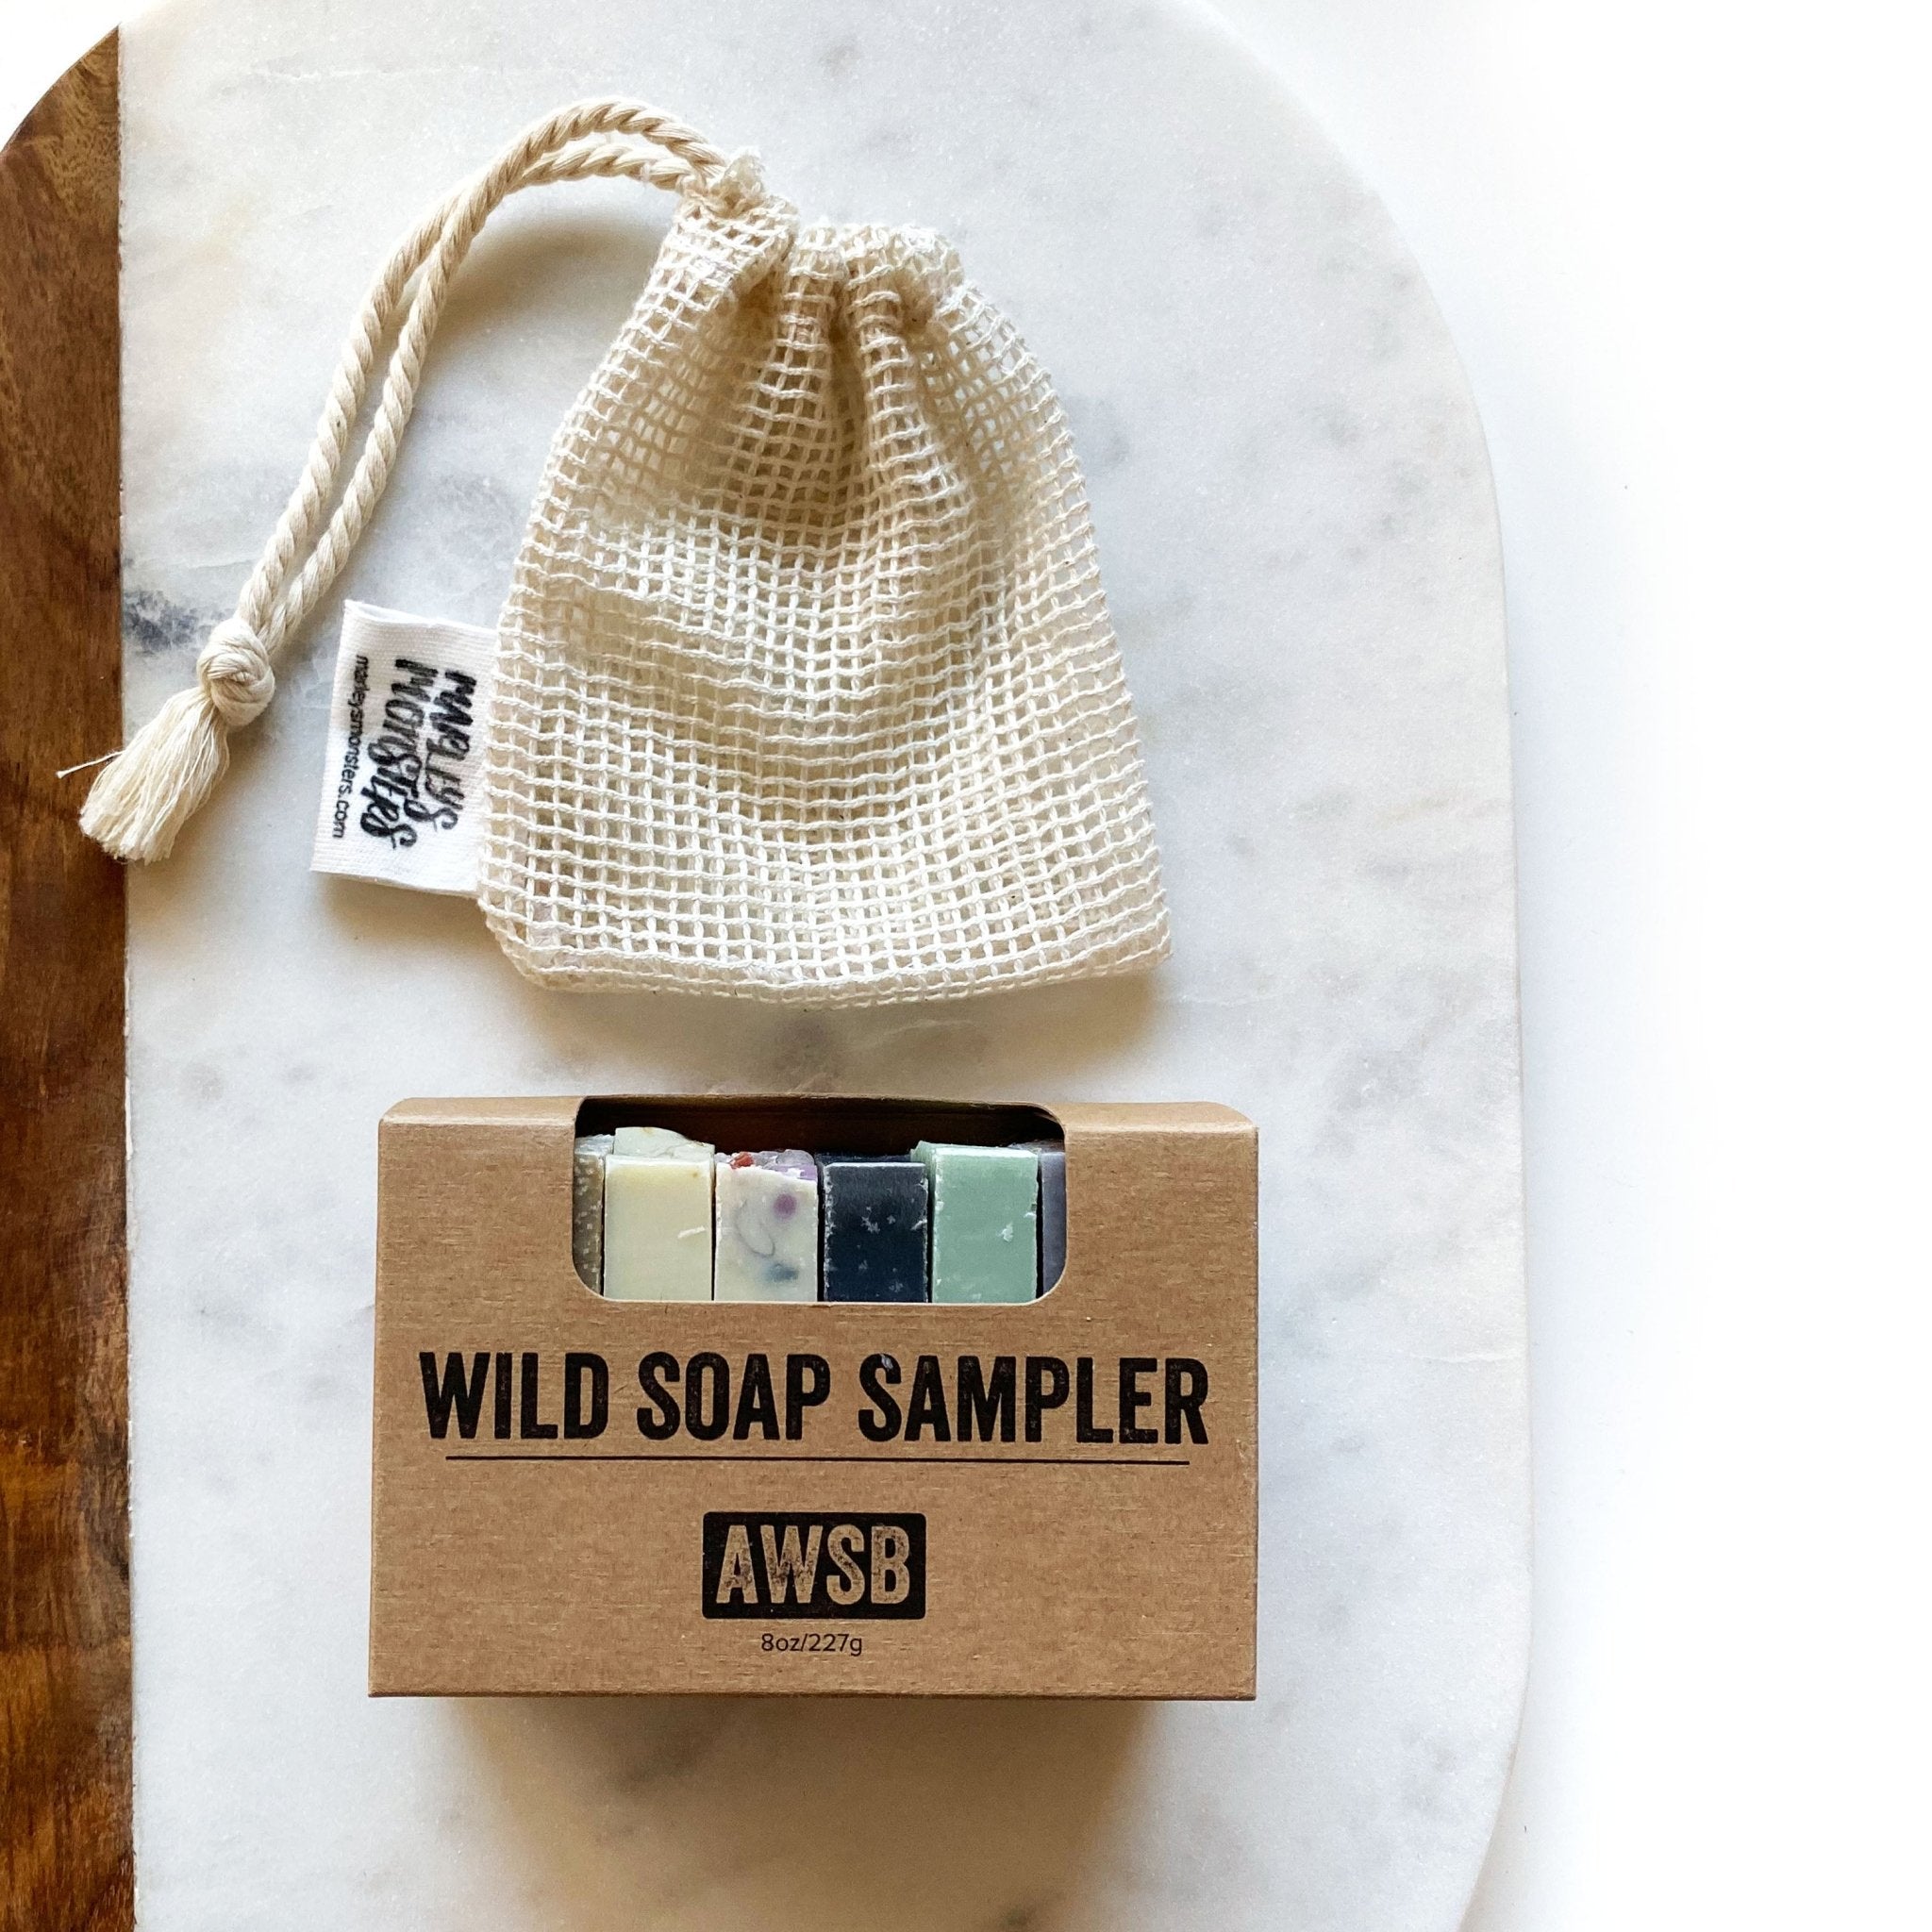 Soap Sampler + Saver Set - Marley's Monsters